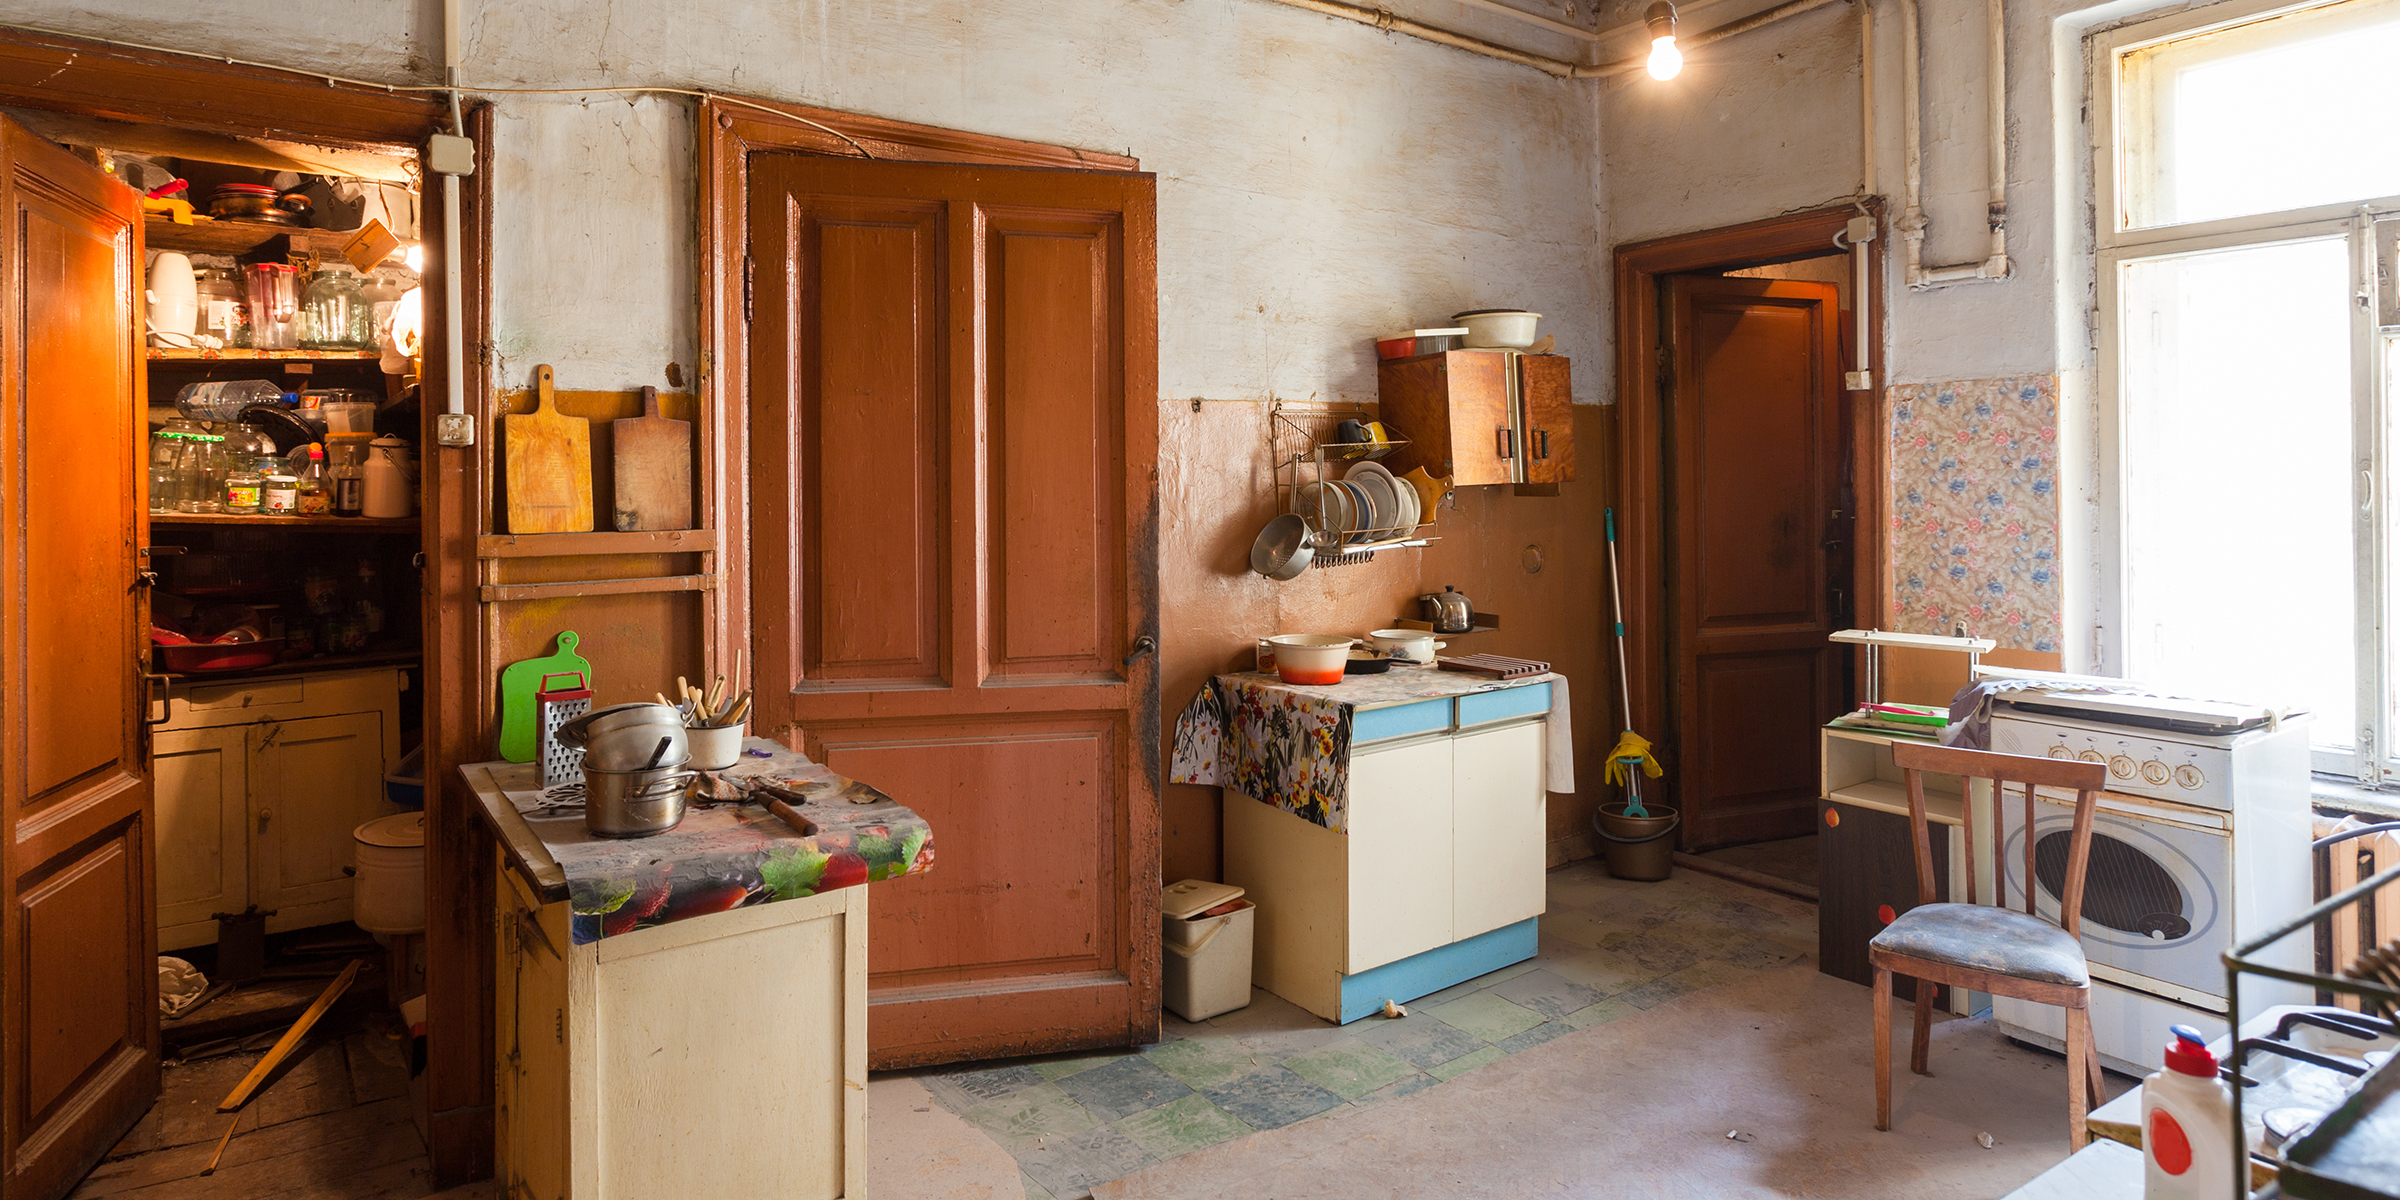 Un appartement simple et encombré | Source : Shutterstock